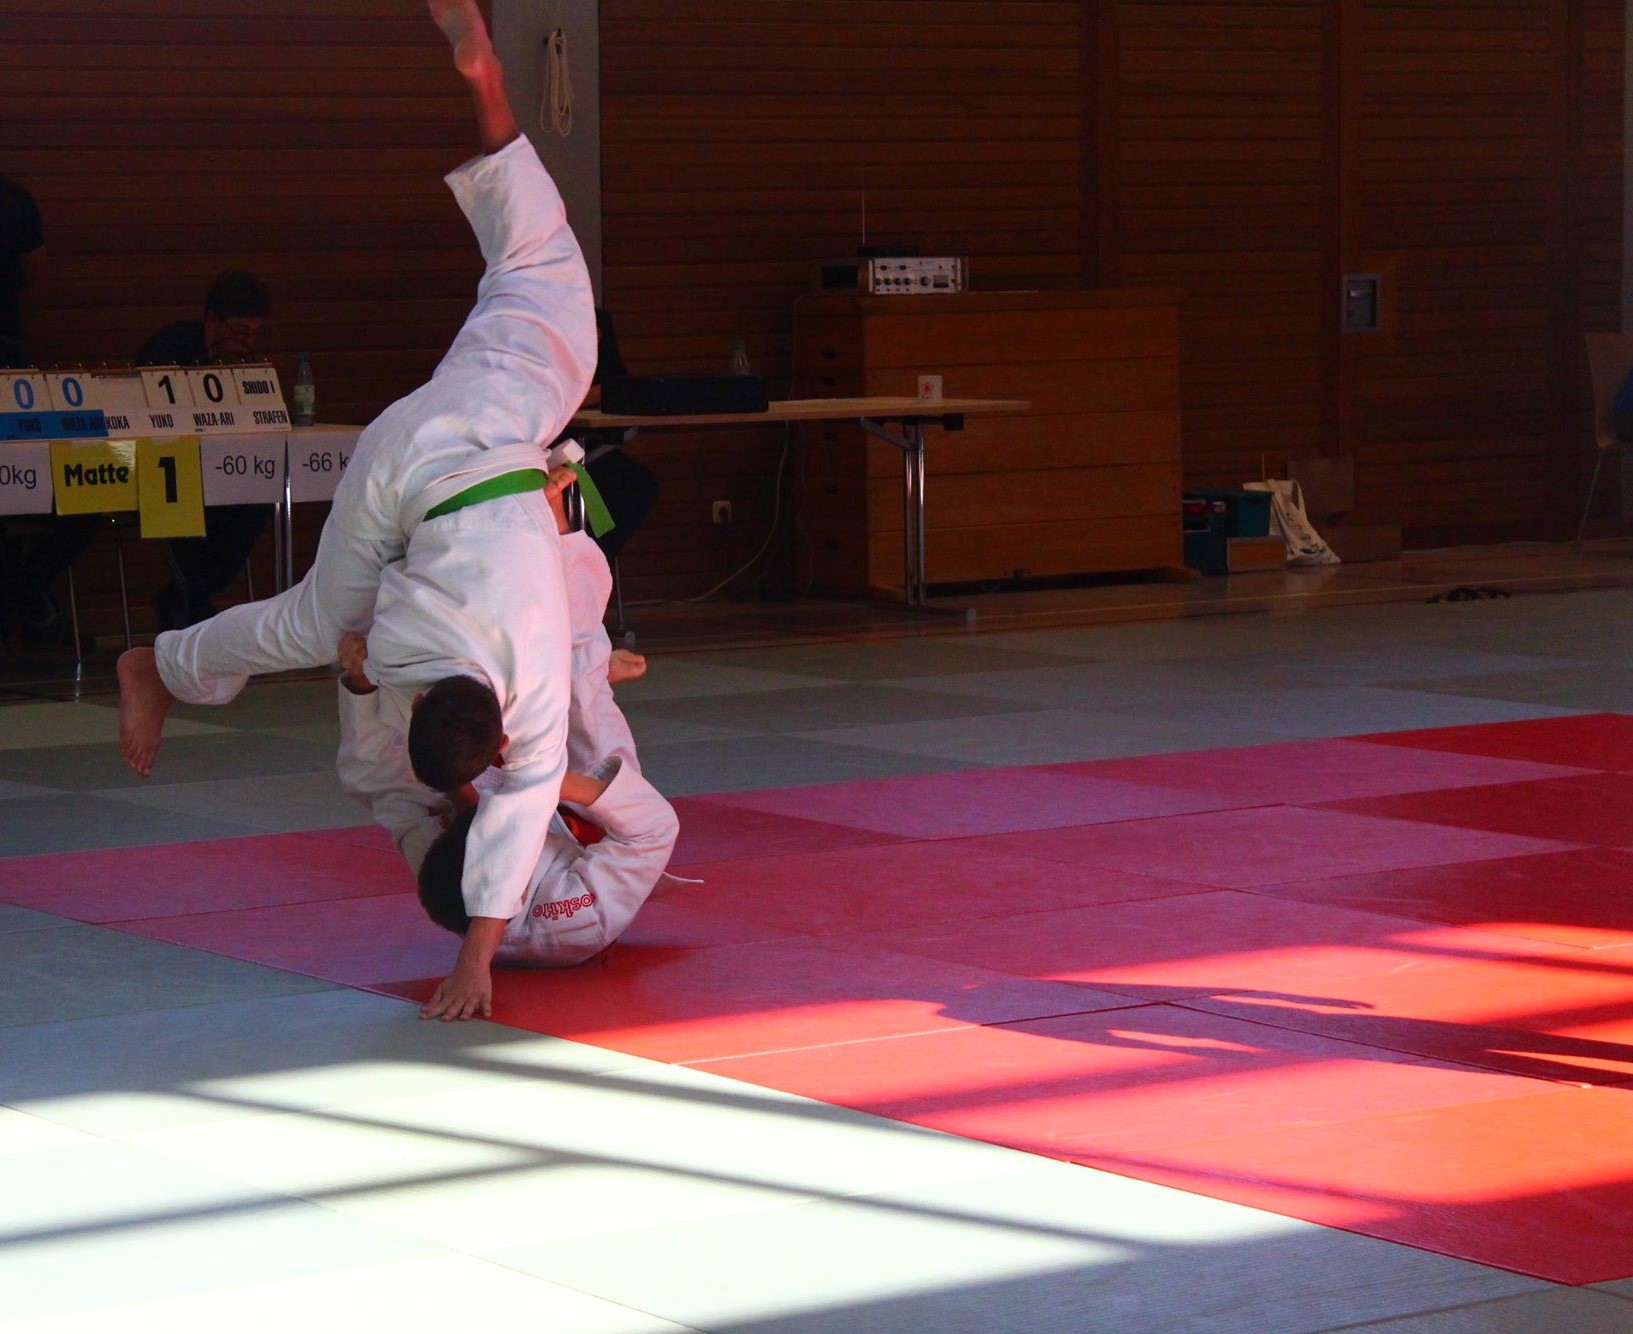 Bild von einem Wettkampf, ein Judoka mit Grünen Gürtel fällt über ein am Boden liegendes Judoka und Stützt dabei seine Hand auf der Matte ab. 